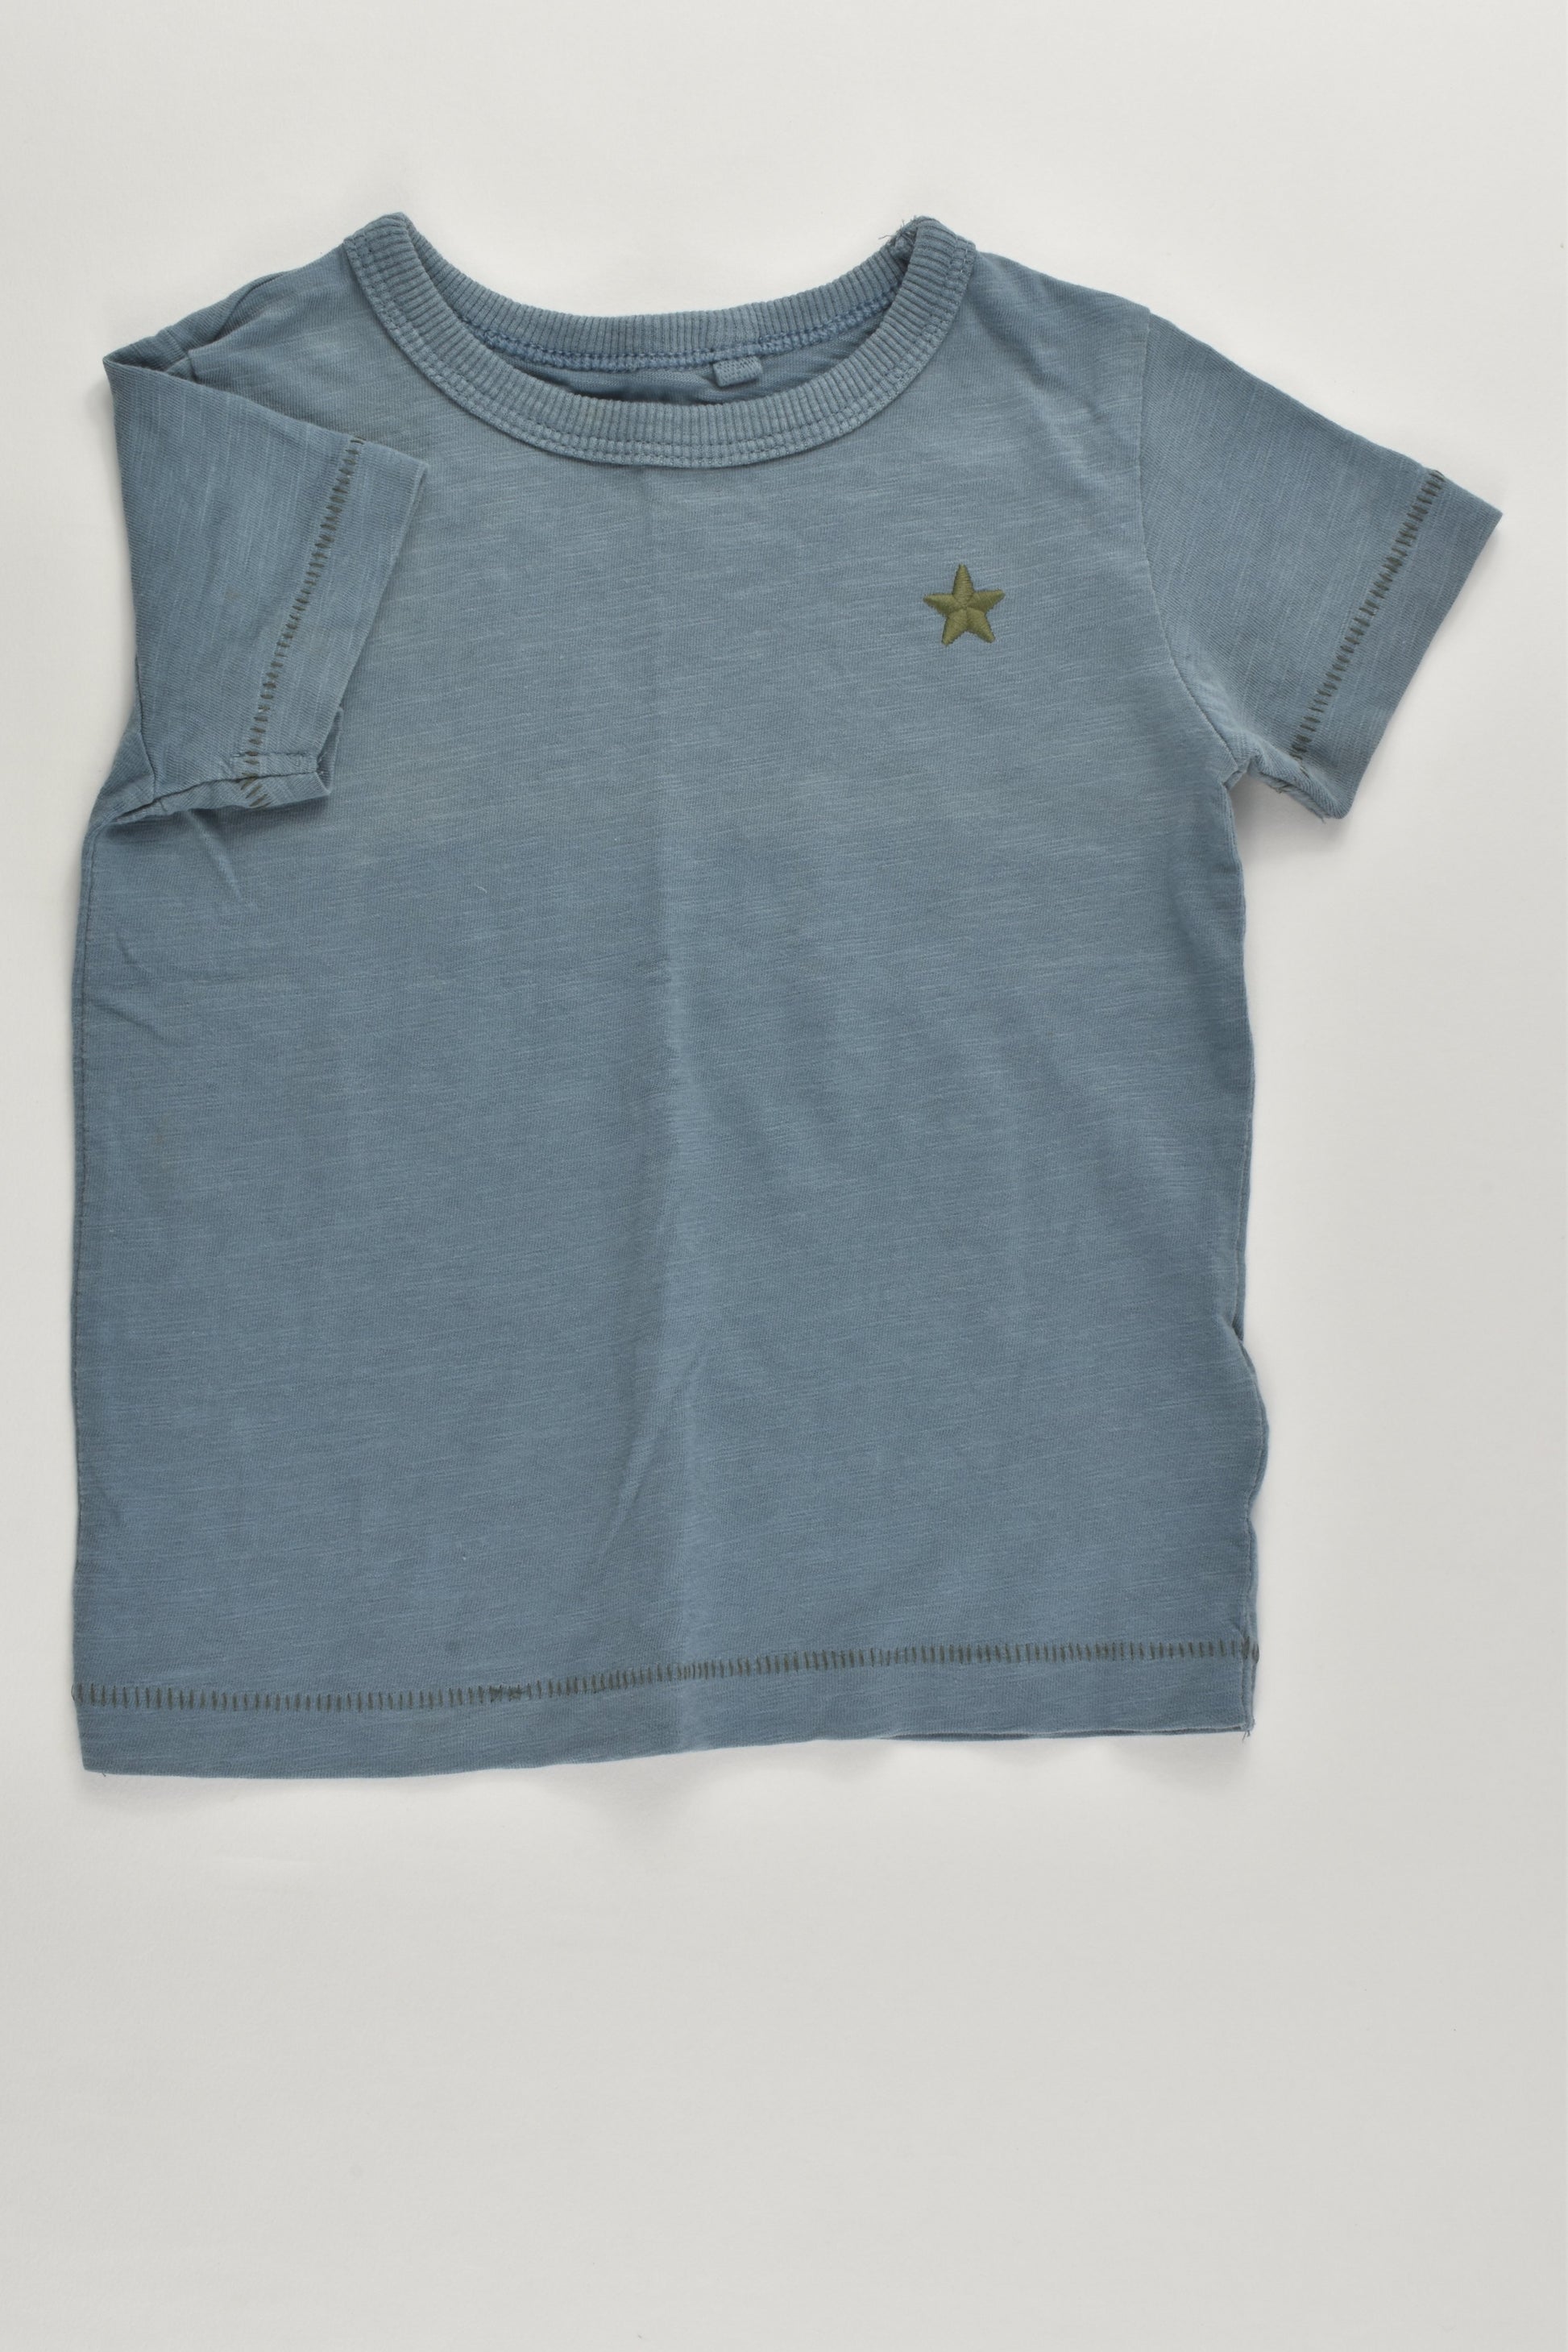 Next Size 0 (6-9 months) T-shirt